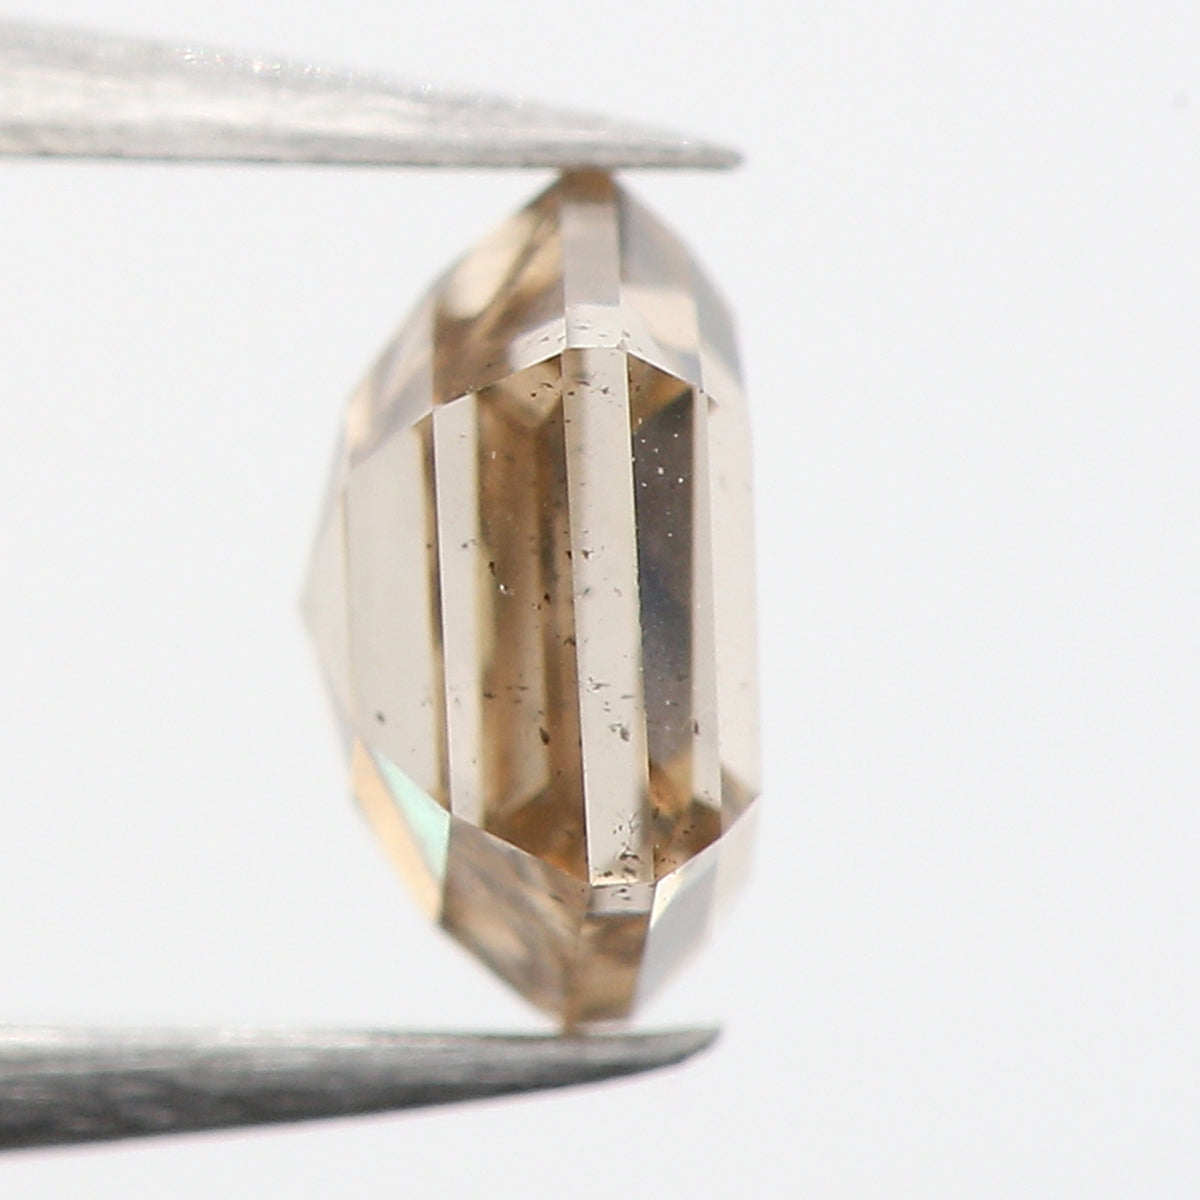 0.34 Ct Natural Loose Diamond, Hexagon Diamond, Brown Diamond, Polished Diamond, Rustic Diamond, Rose Cut Diamond, KR2322